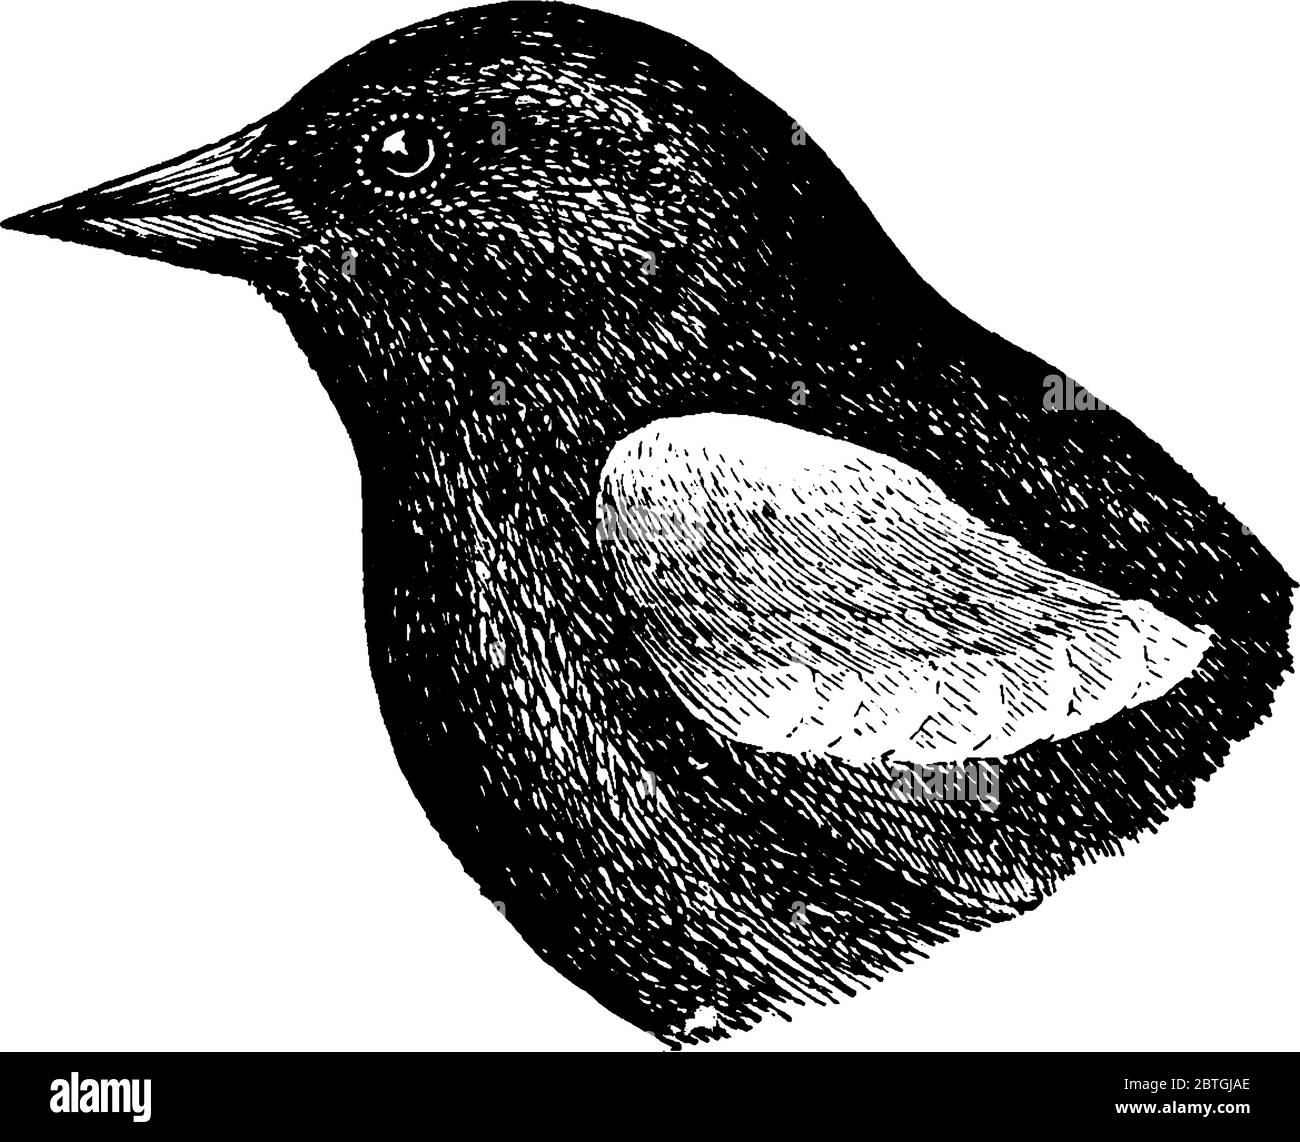 Il Blackbird alato rosso, un uccello passerino della famiglia Icteridae, trovato in gran parte del Nord e in gran parte dell'America Centrale, disegno di linea vintage o incisione Illustrazione Vettoriale